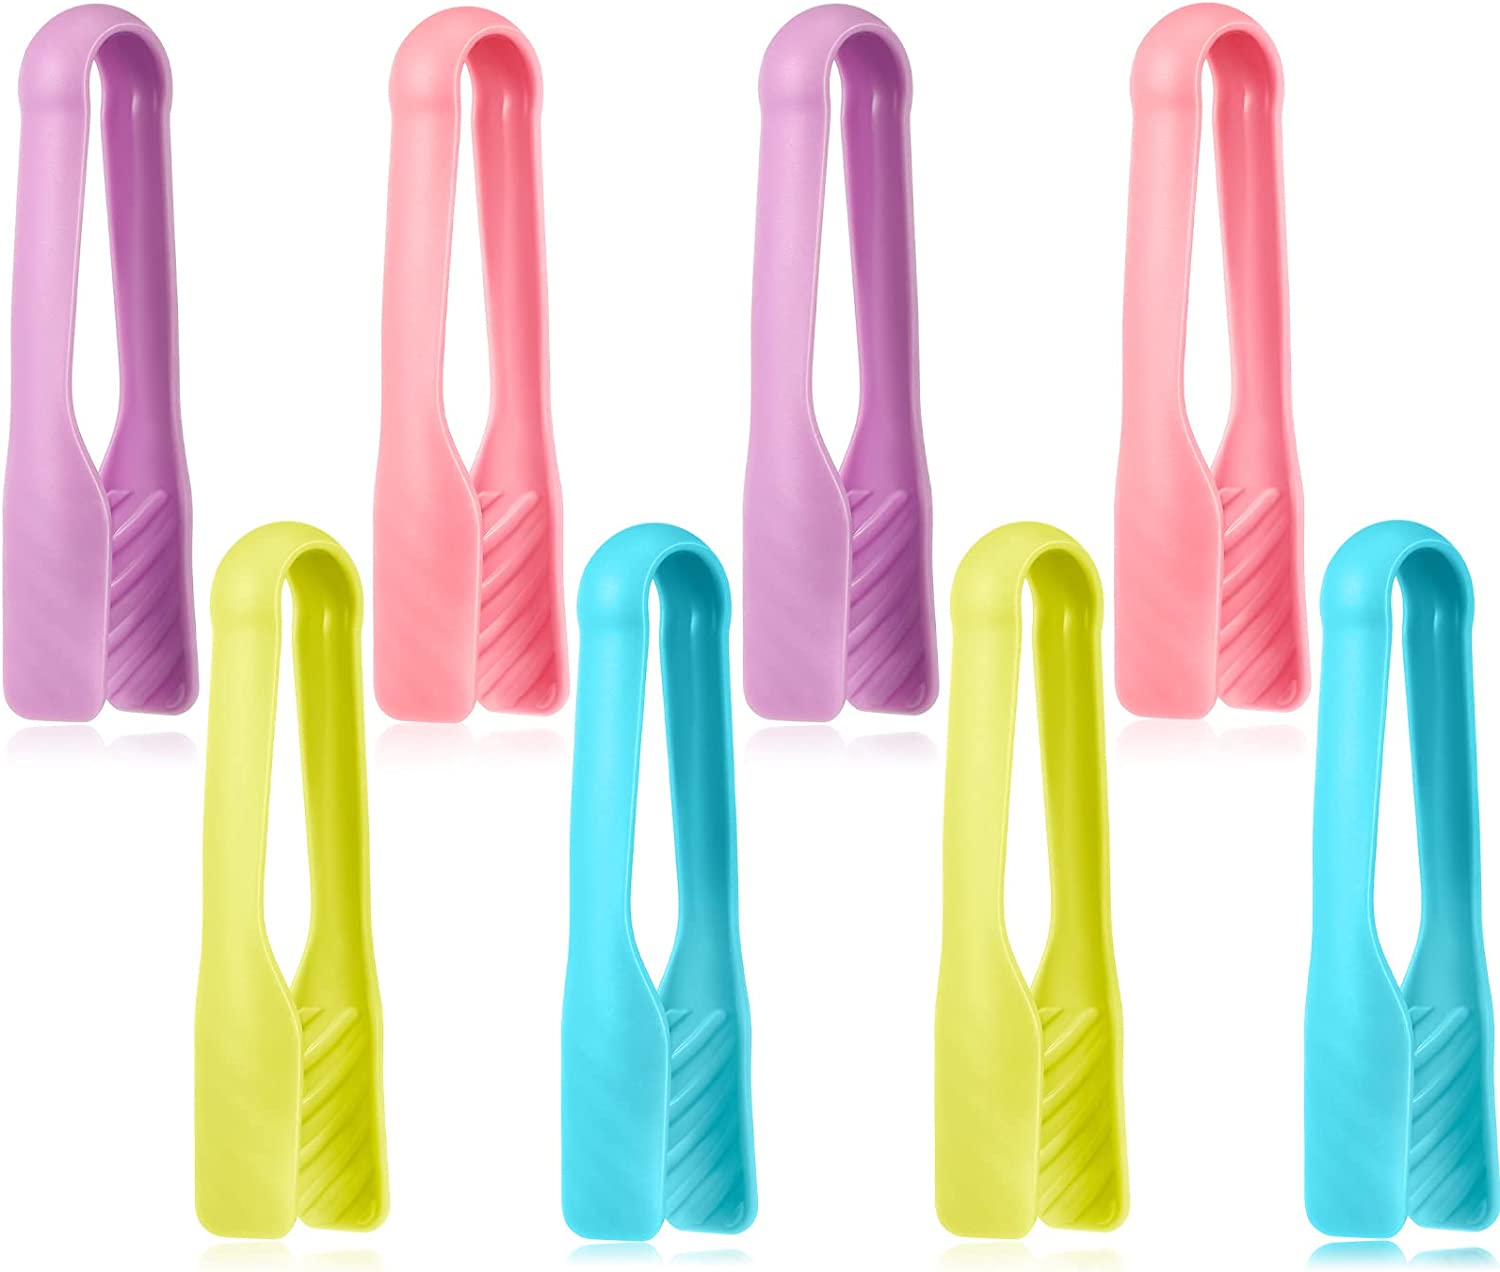 4 Inch Plastic Tweezers - Pack of 25, Plastic Beads Tweezers First